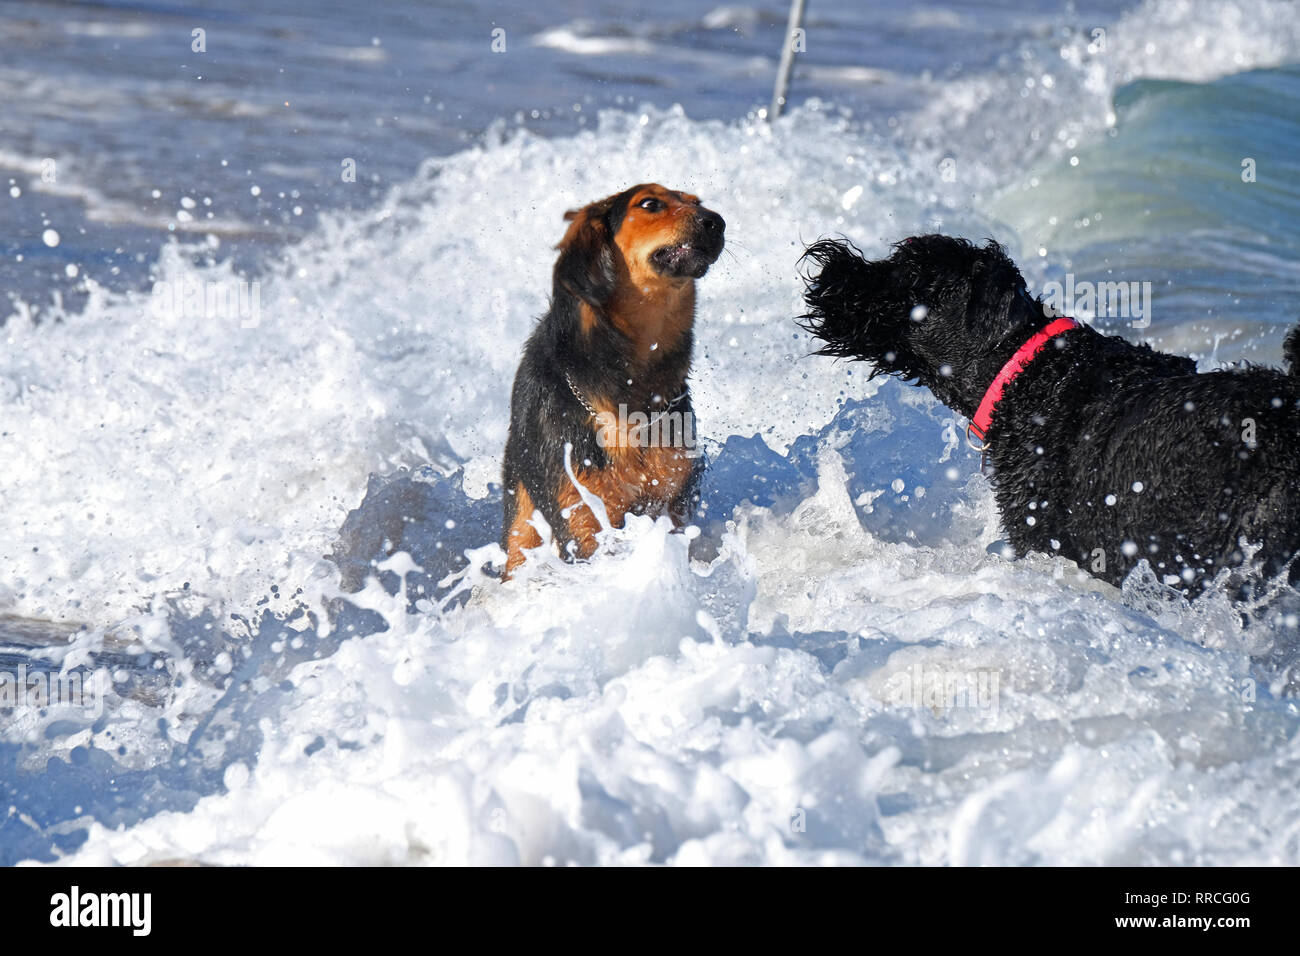 2 chiens ludique de jouer et se battre sur une plage Banque D'Images